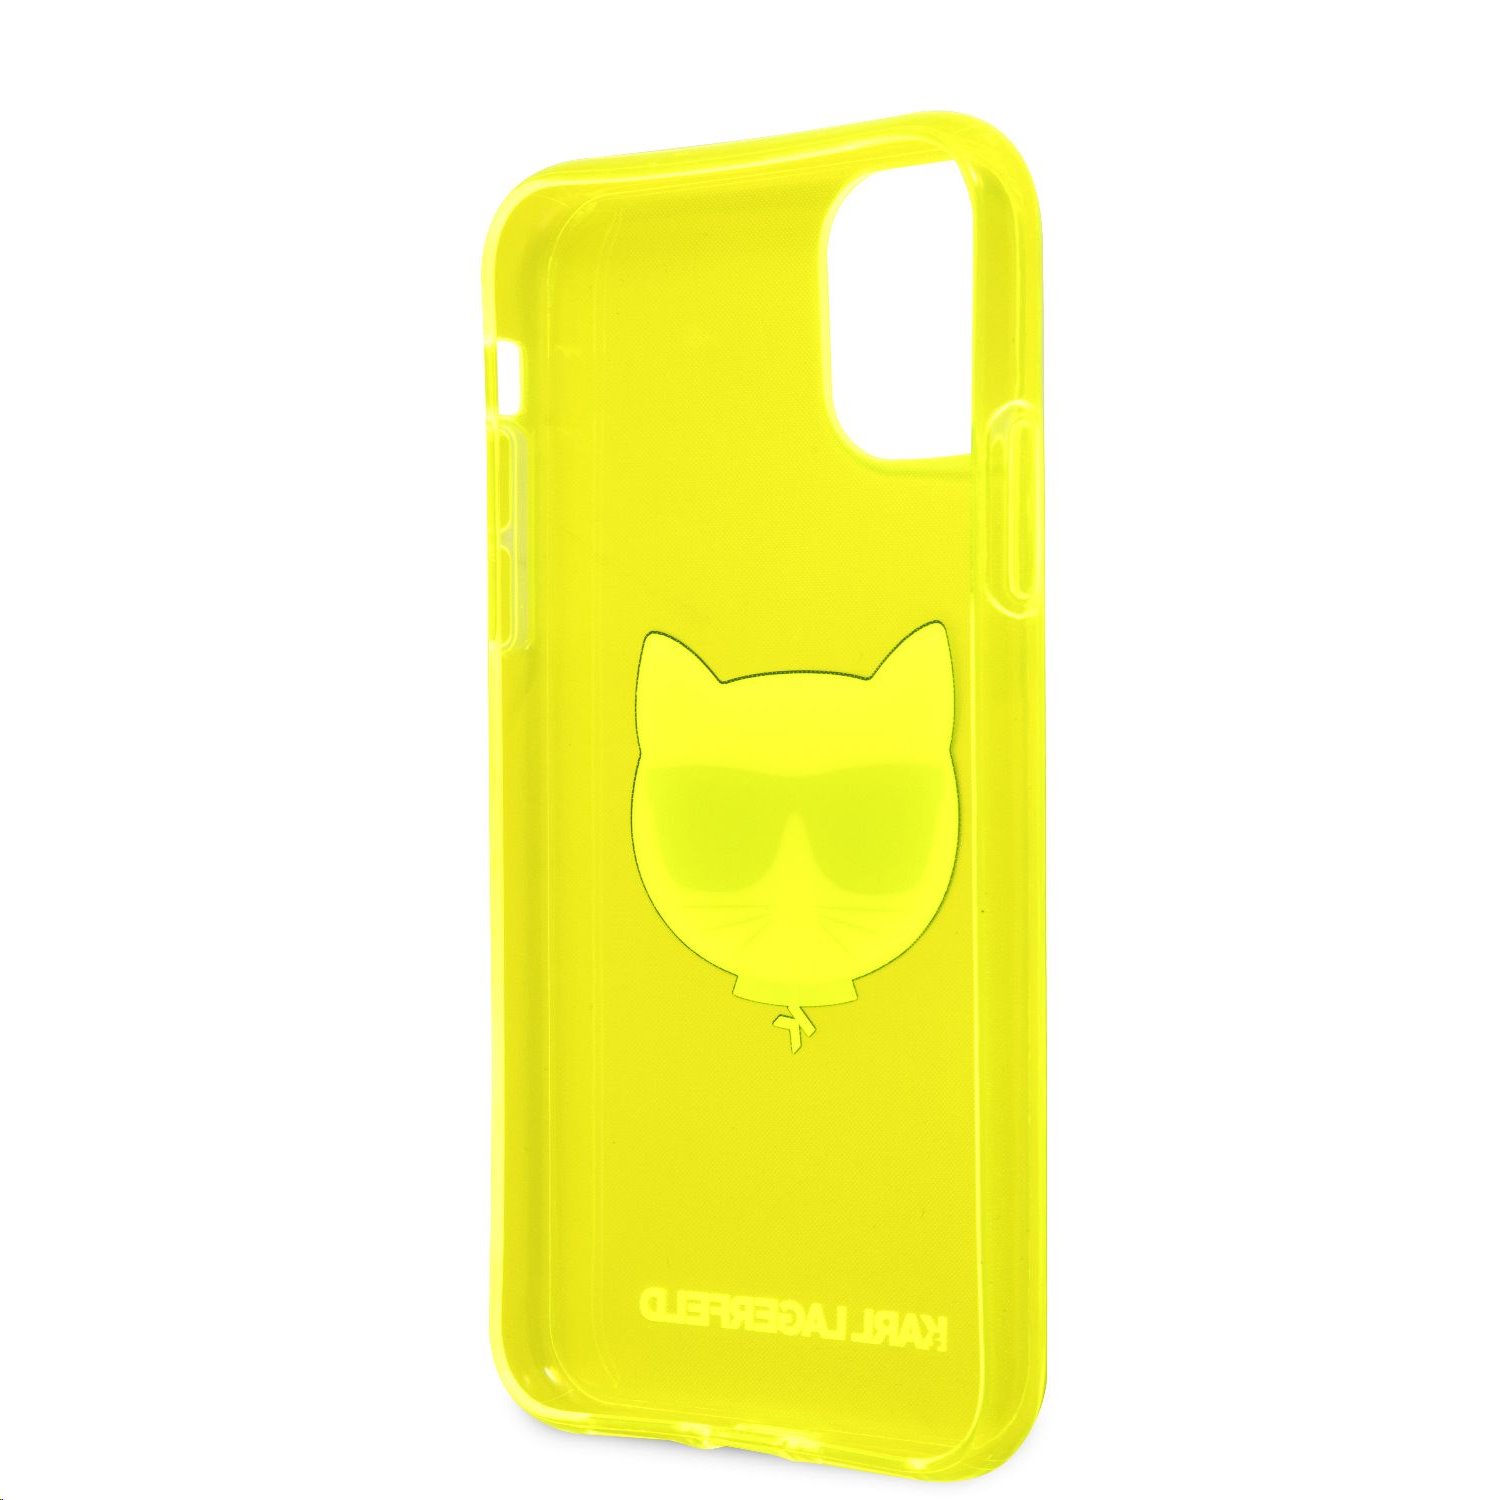 Silikonové pouzdro Karl Lagerfeld Choupette Head KLHCN61CHTRY pro Apple iPhone 11, žlutá